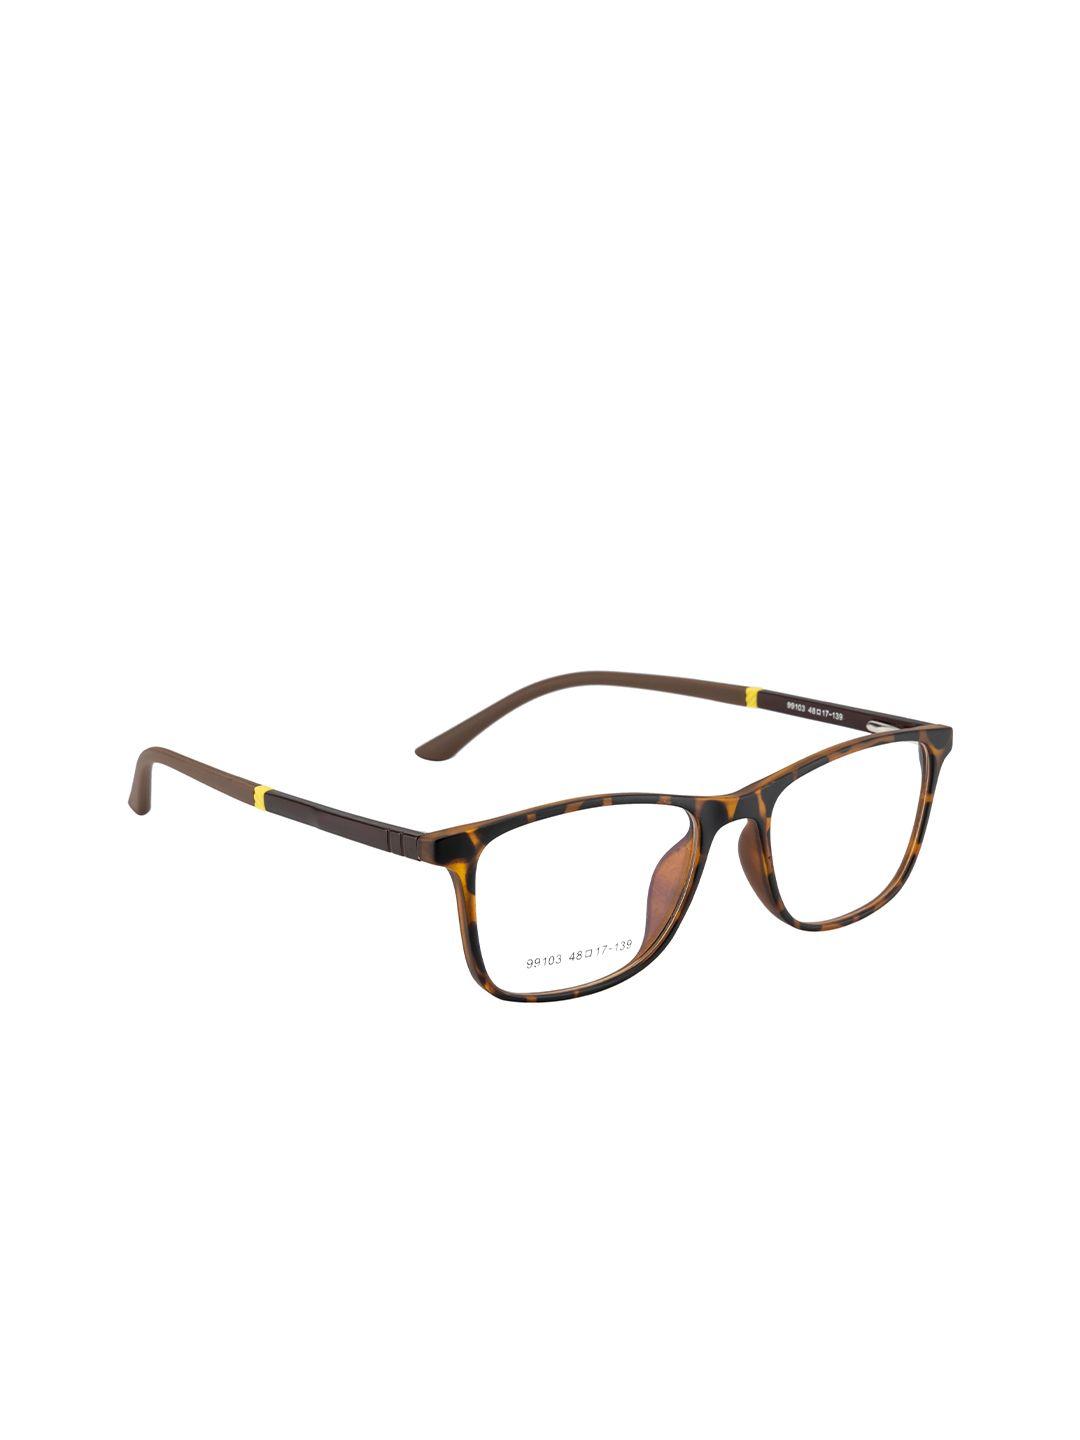 gold berg unisex brown & yellow full rim wayfarer frames eyeglasses